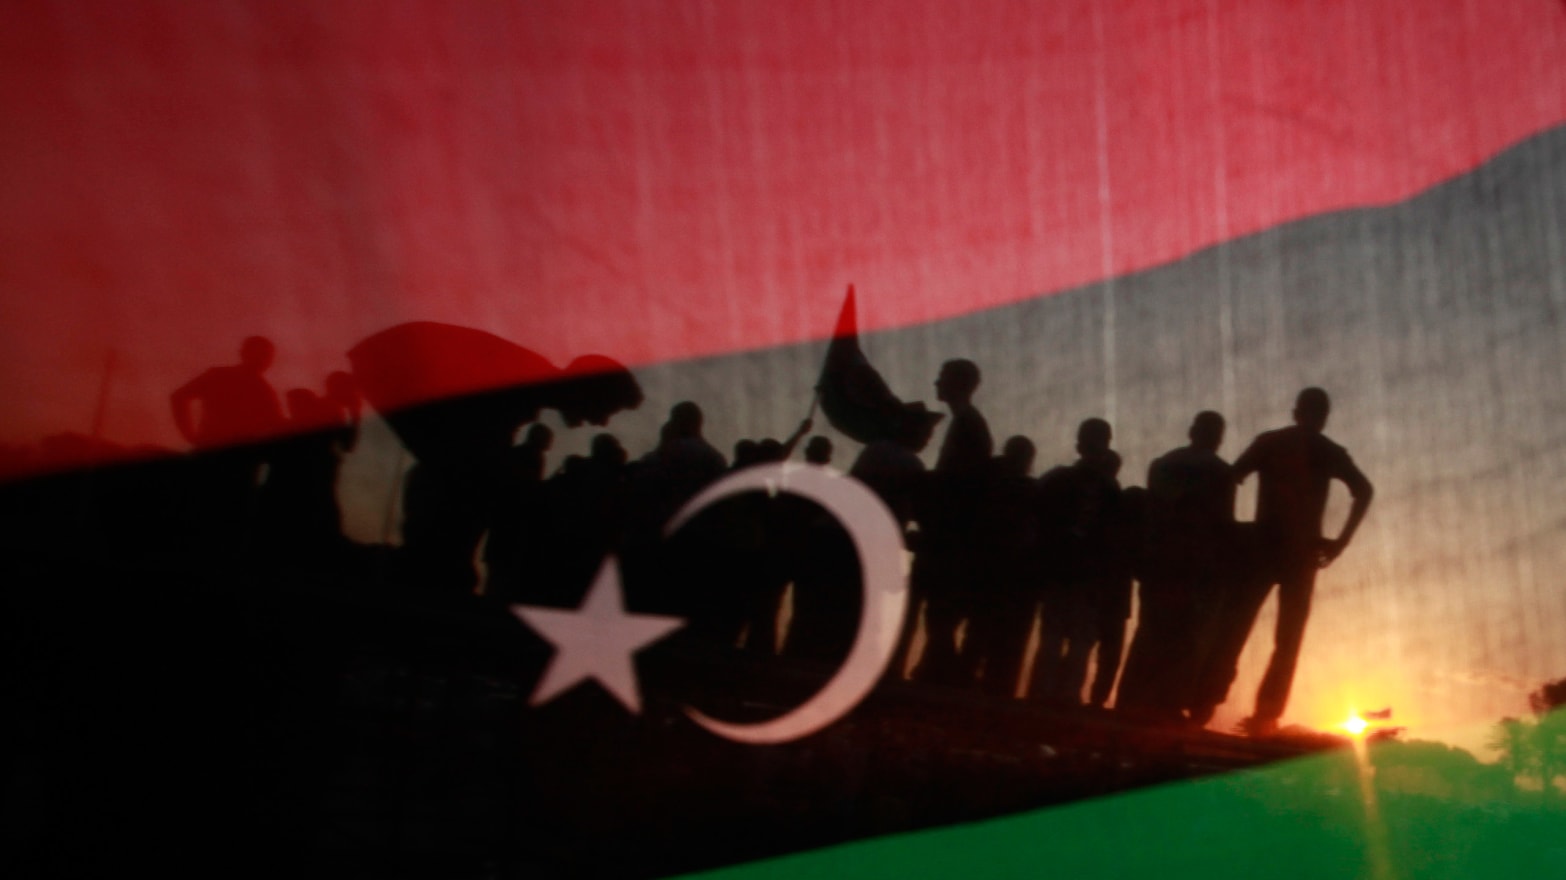 Λιβύη κατάπαυση πυρός: Ραγδαίες εξελίξεις στη Λιβύη με τις δυνάμεις του Χαφτάρ